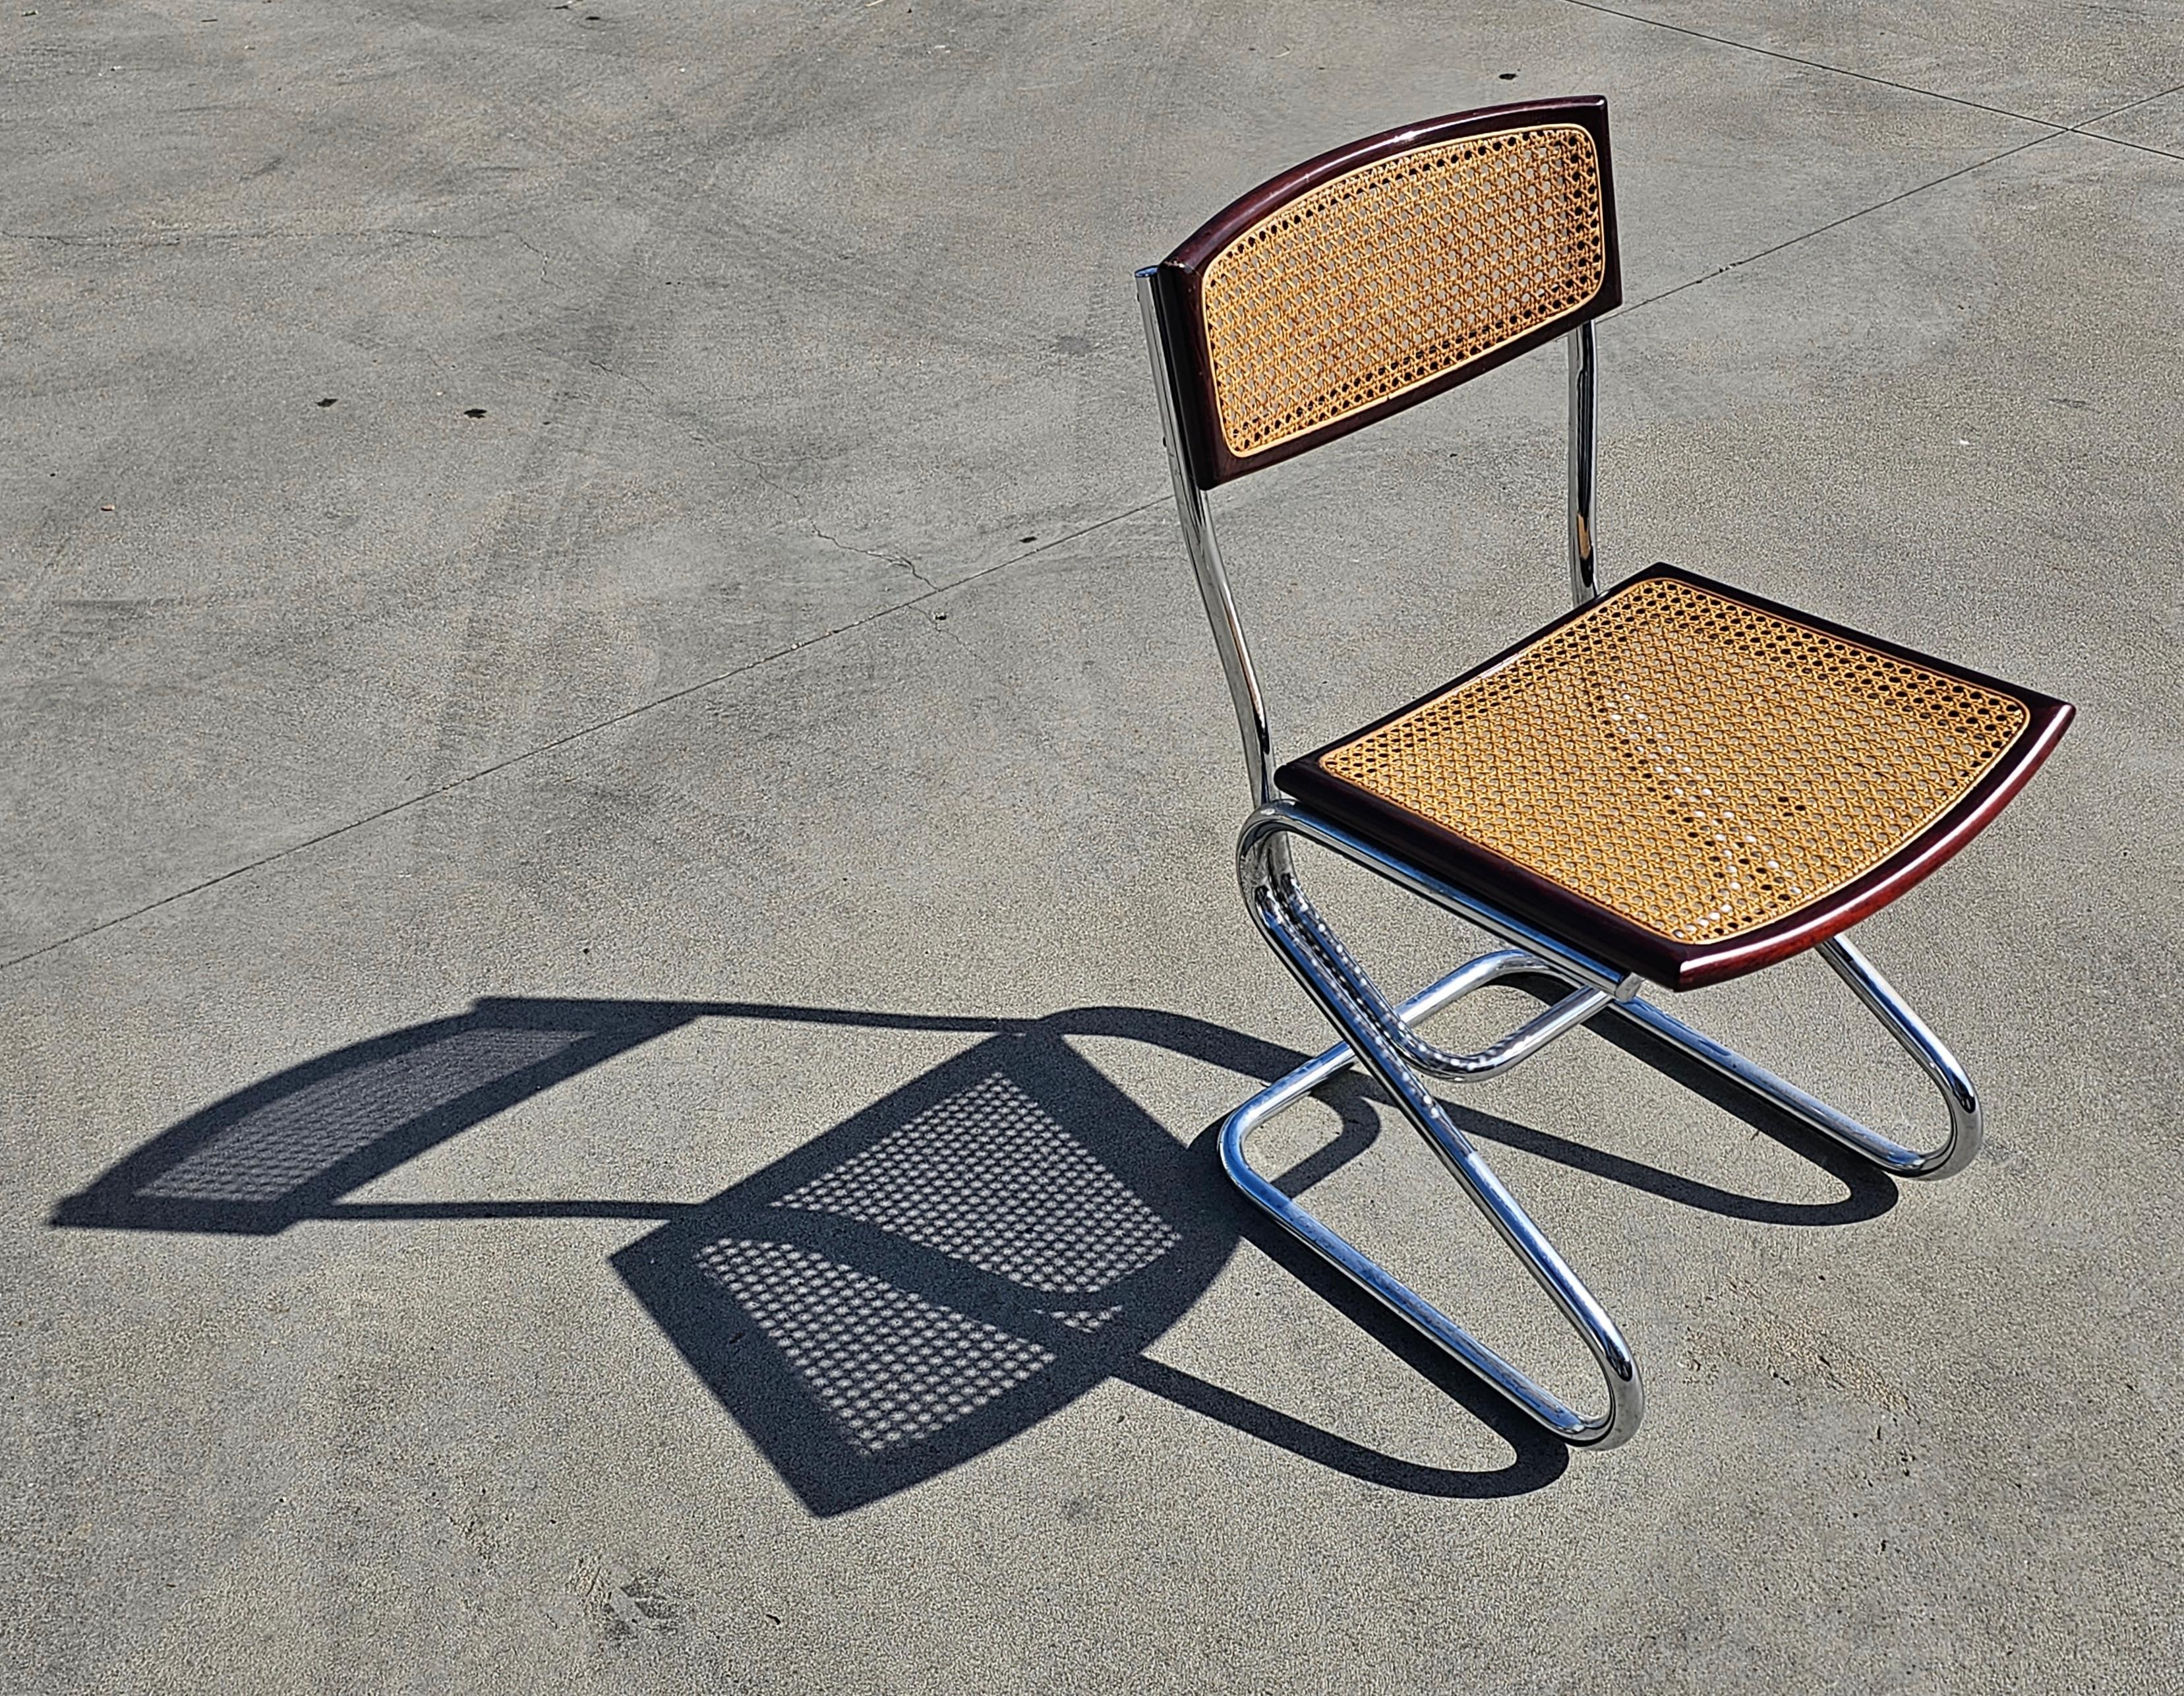 In diesem Angebot finden Sie Esszimmerstühle im Bauhaus-Stil, die im Stil der Cesca-Stühle von Marcel Breuer entworfen wurden. Sie bestehen aus einem Rohrgestell mit Sitzflächen und Rückenlehnen aus Buchenholz und Rohrgeflecht. Das Rohr auf den